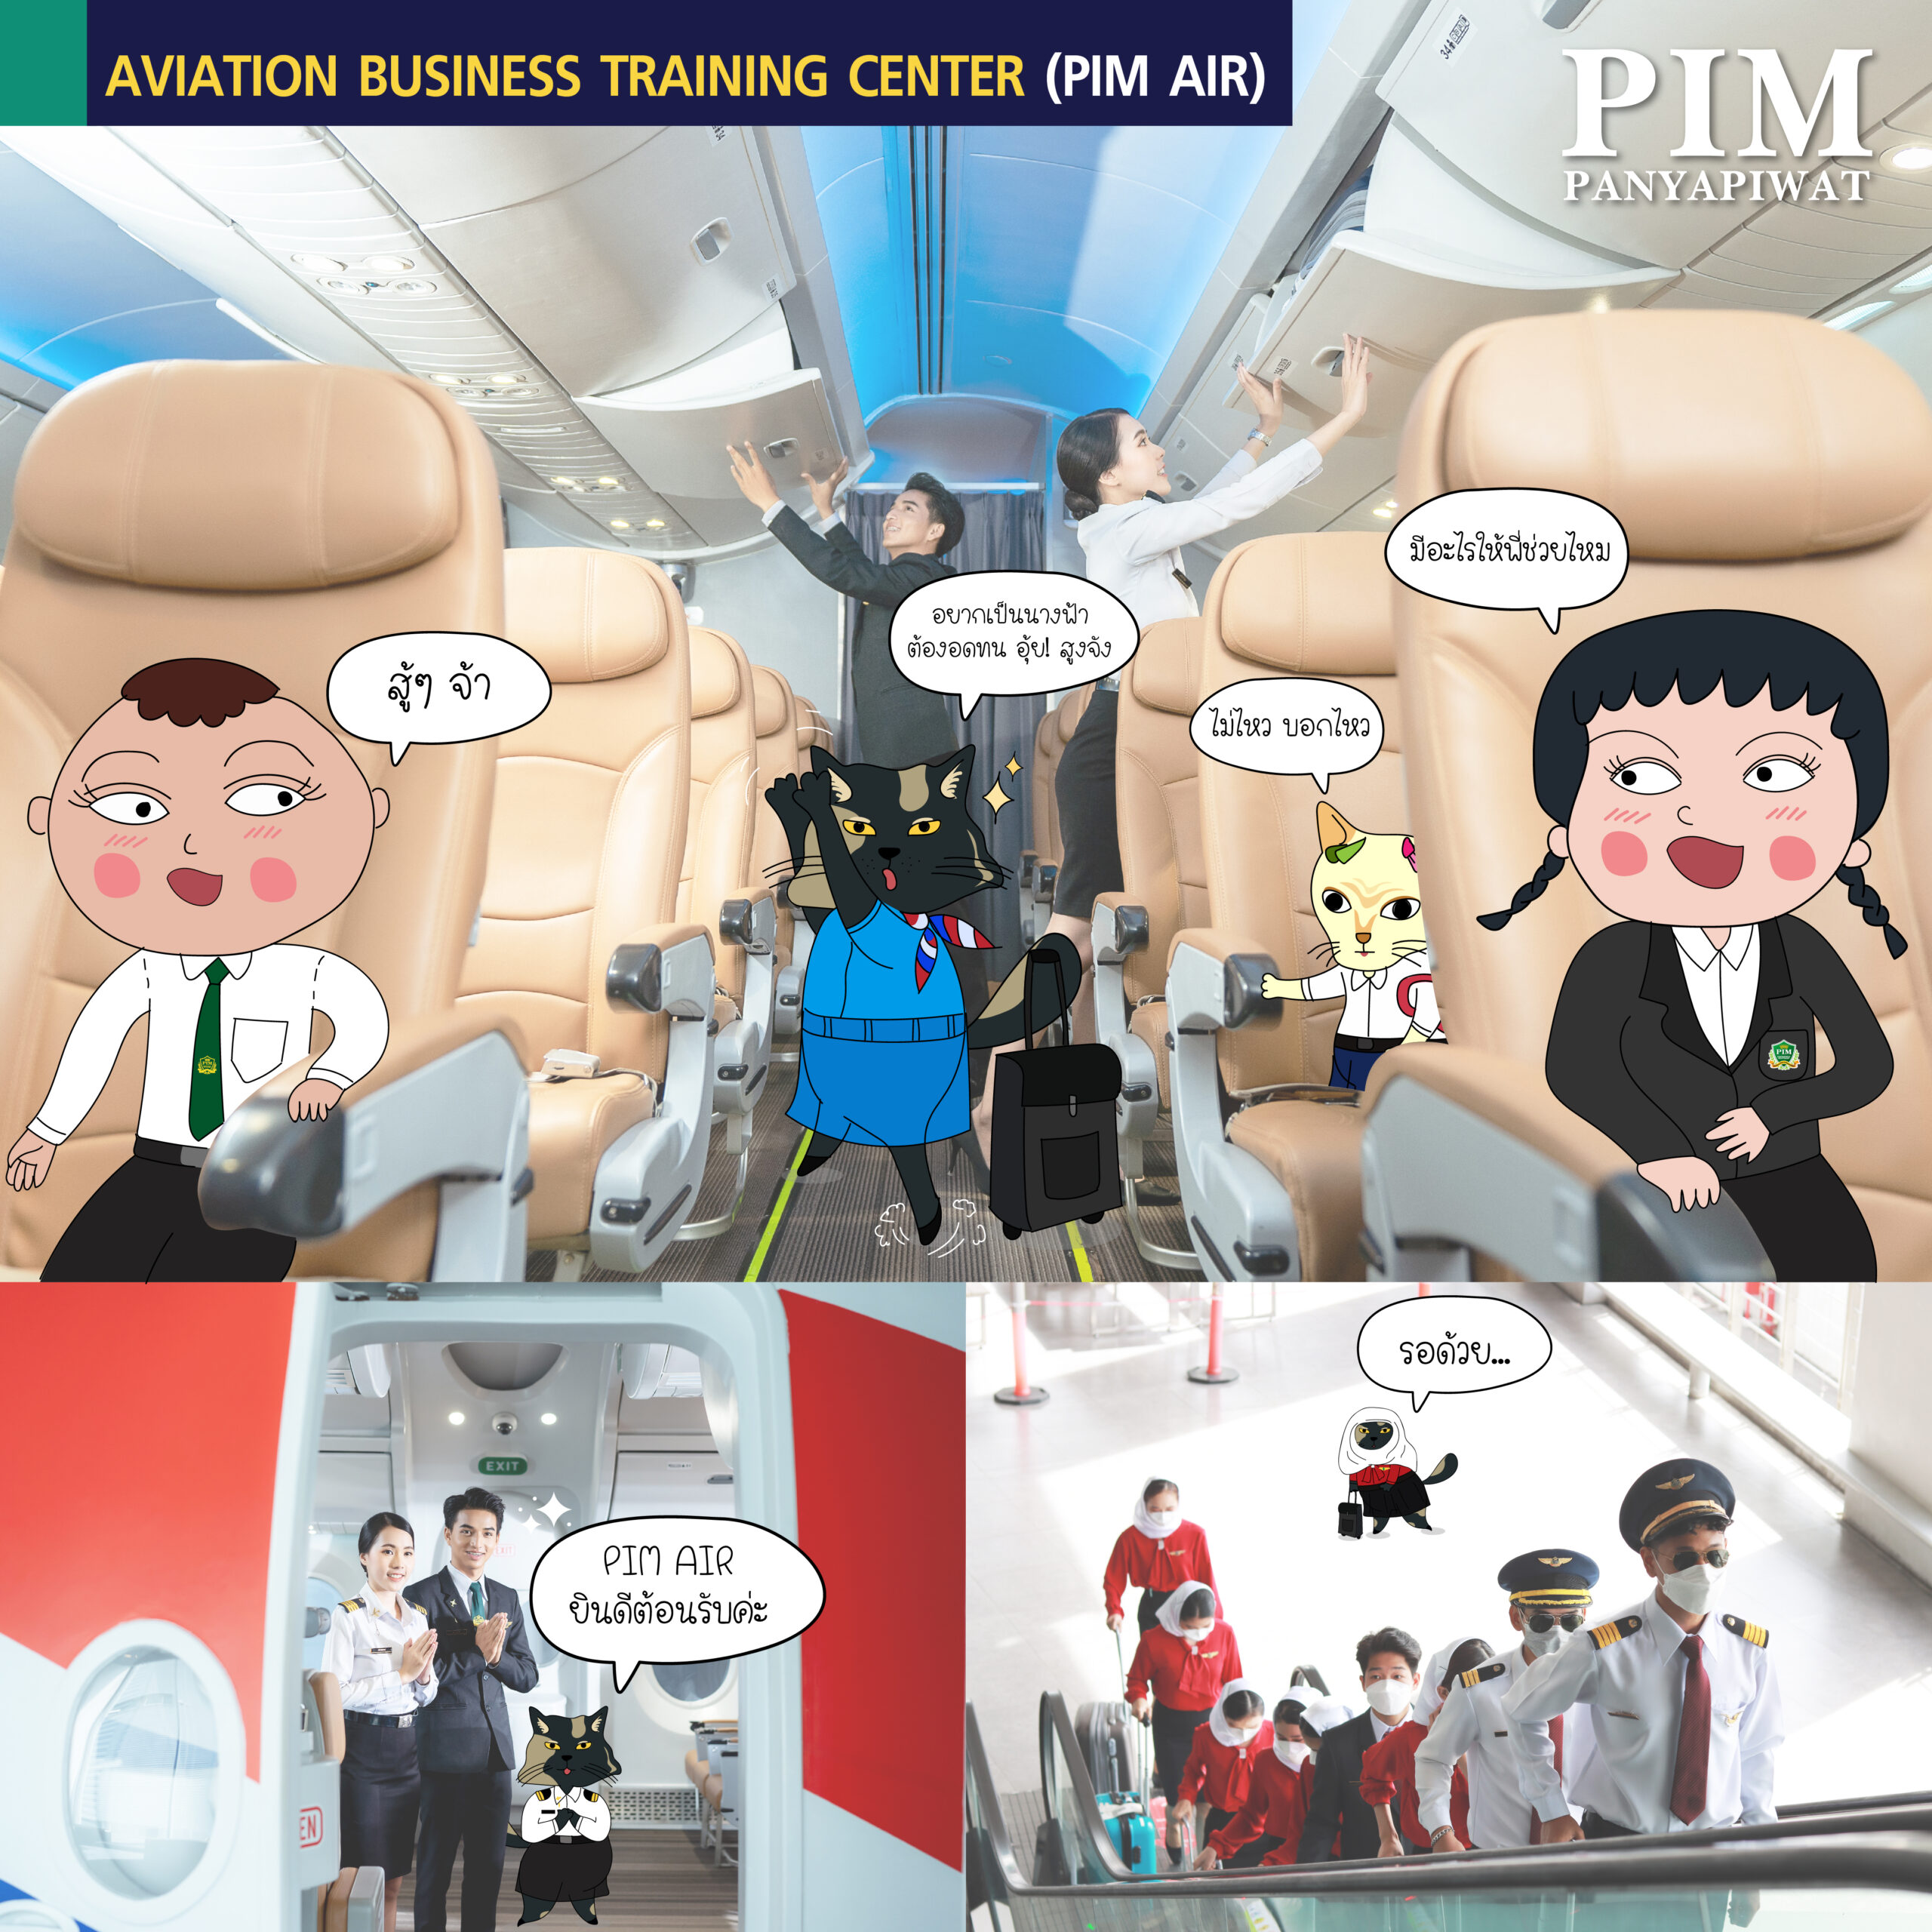 AVIATION BUSINESS TRAINING CENTER (PIM AIR)